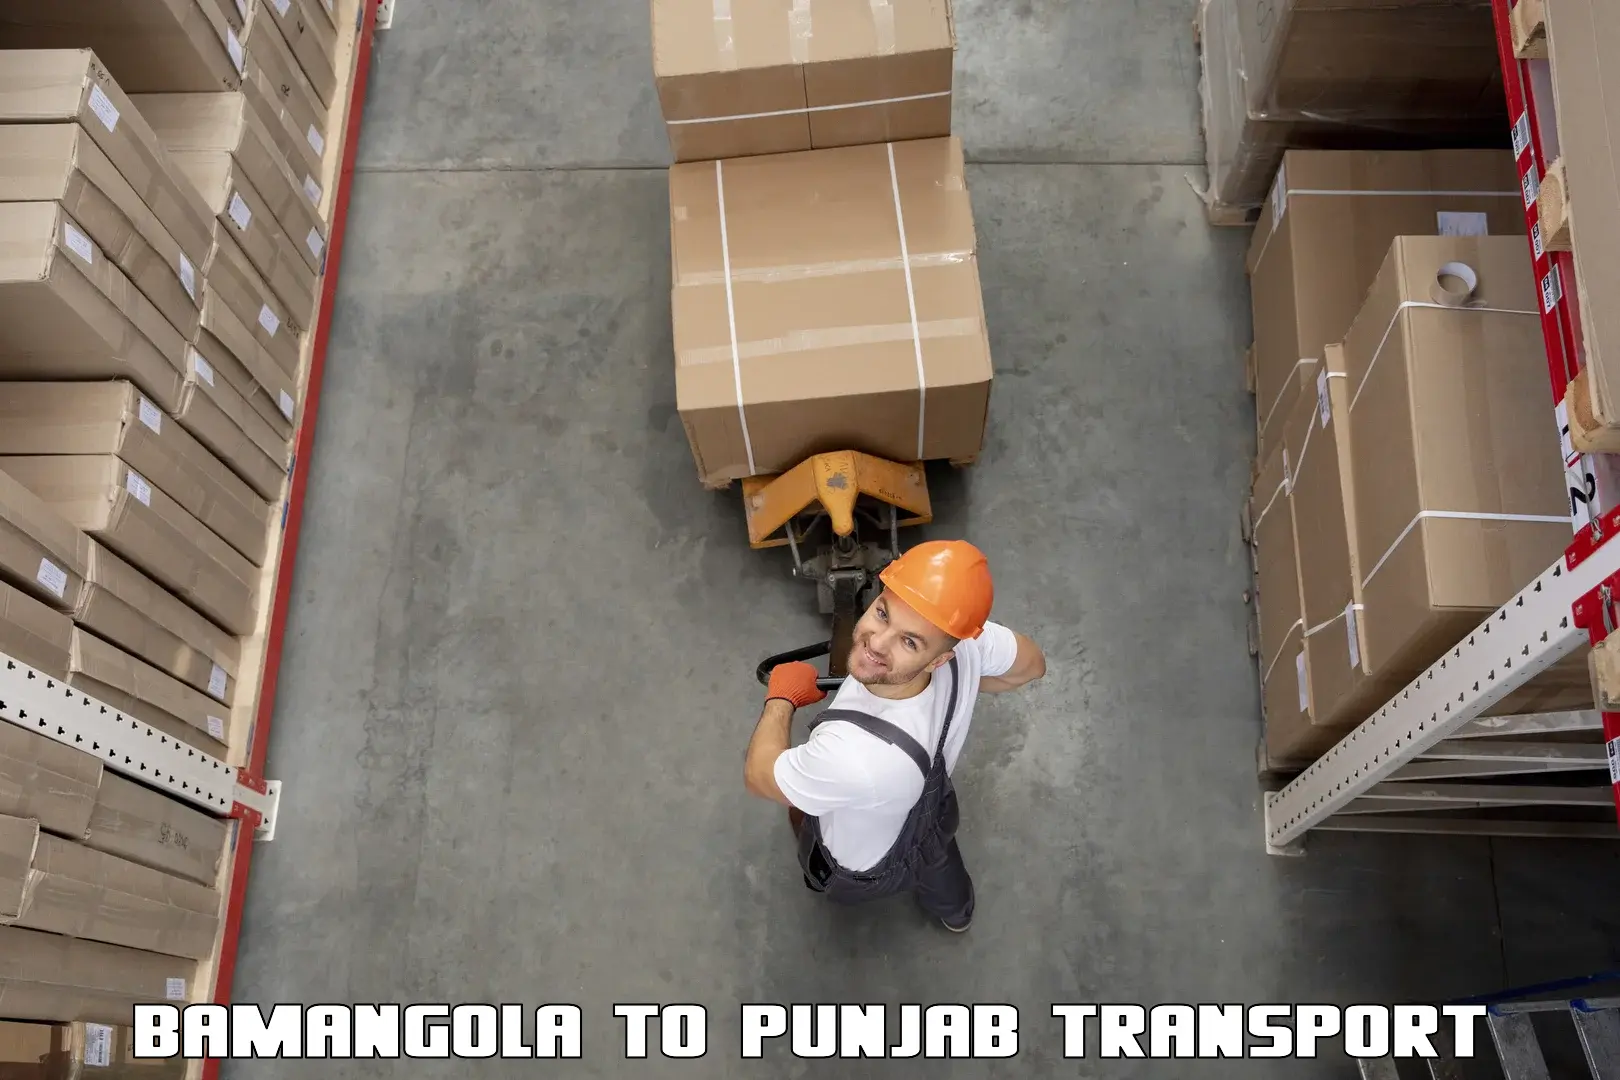 Furniture transport service Bamangola to Machhiwara